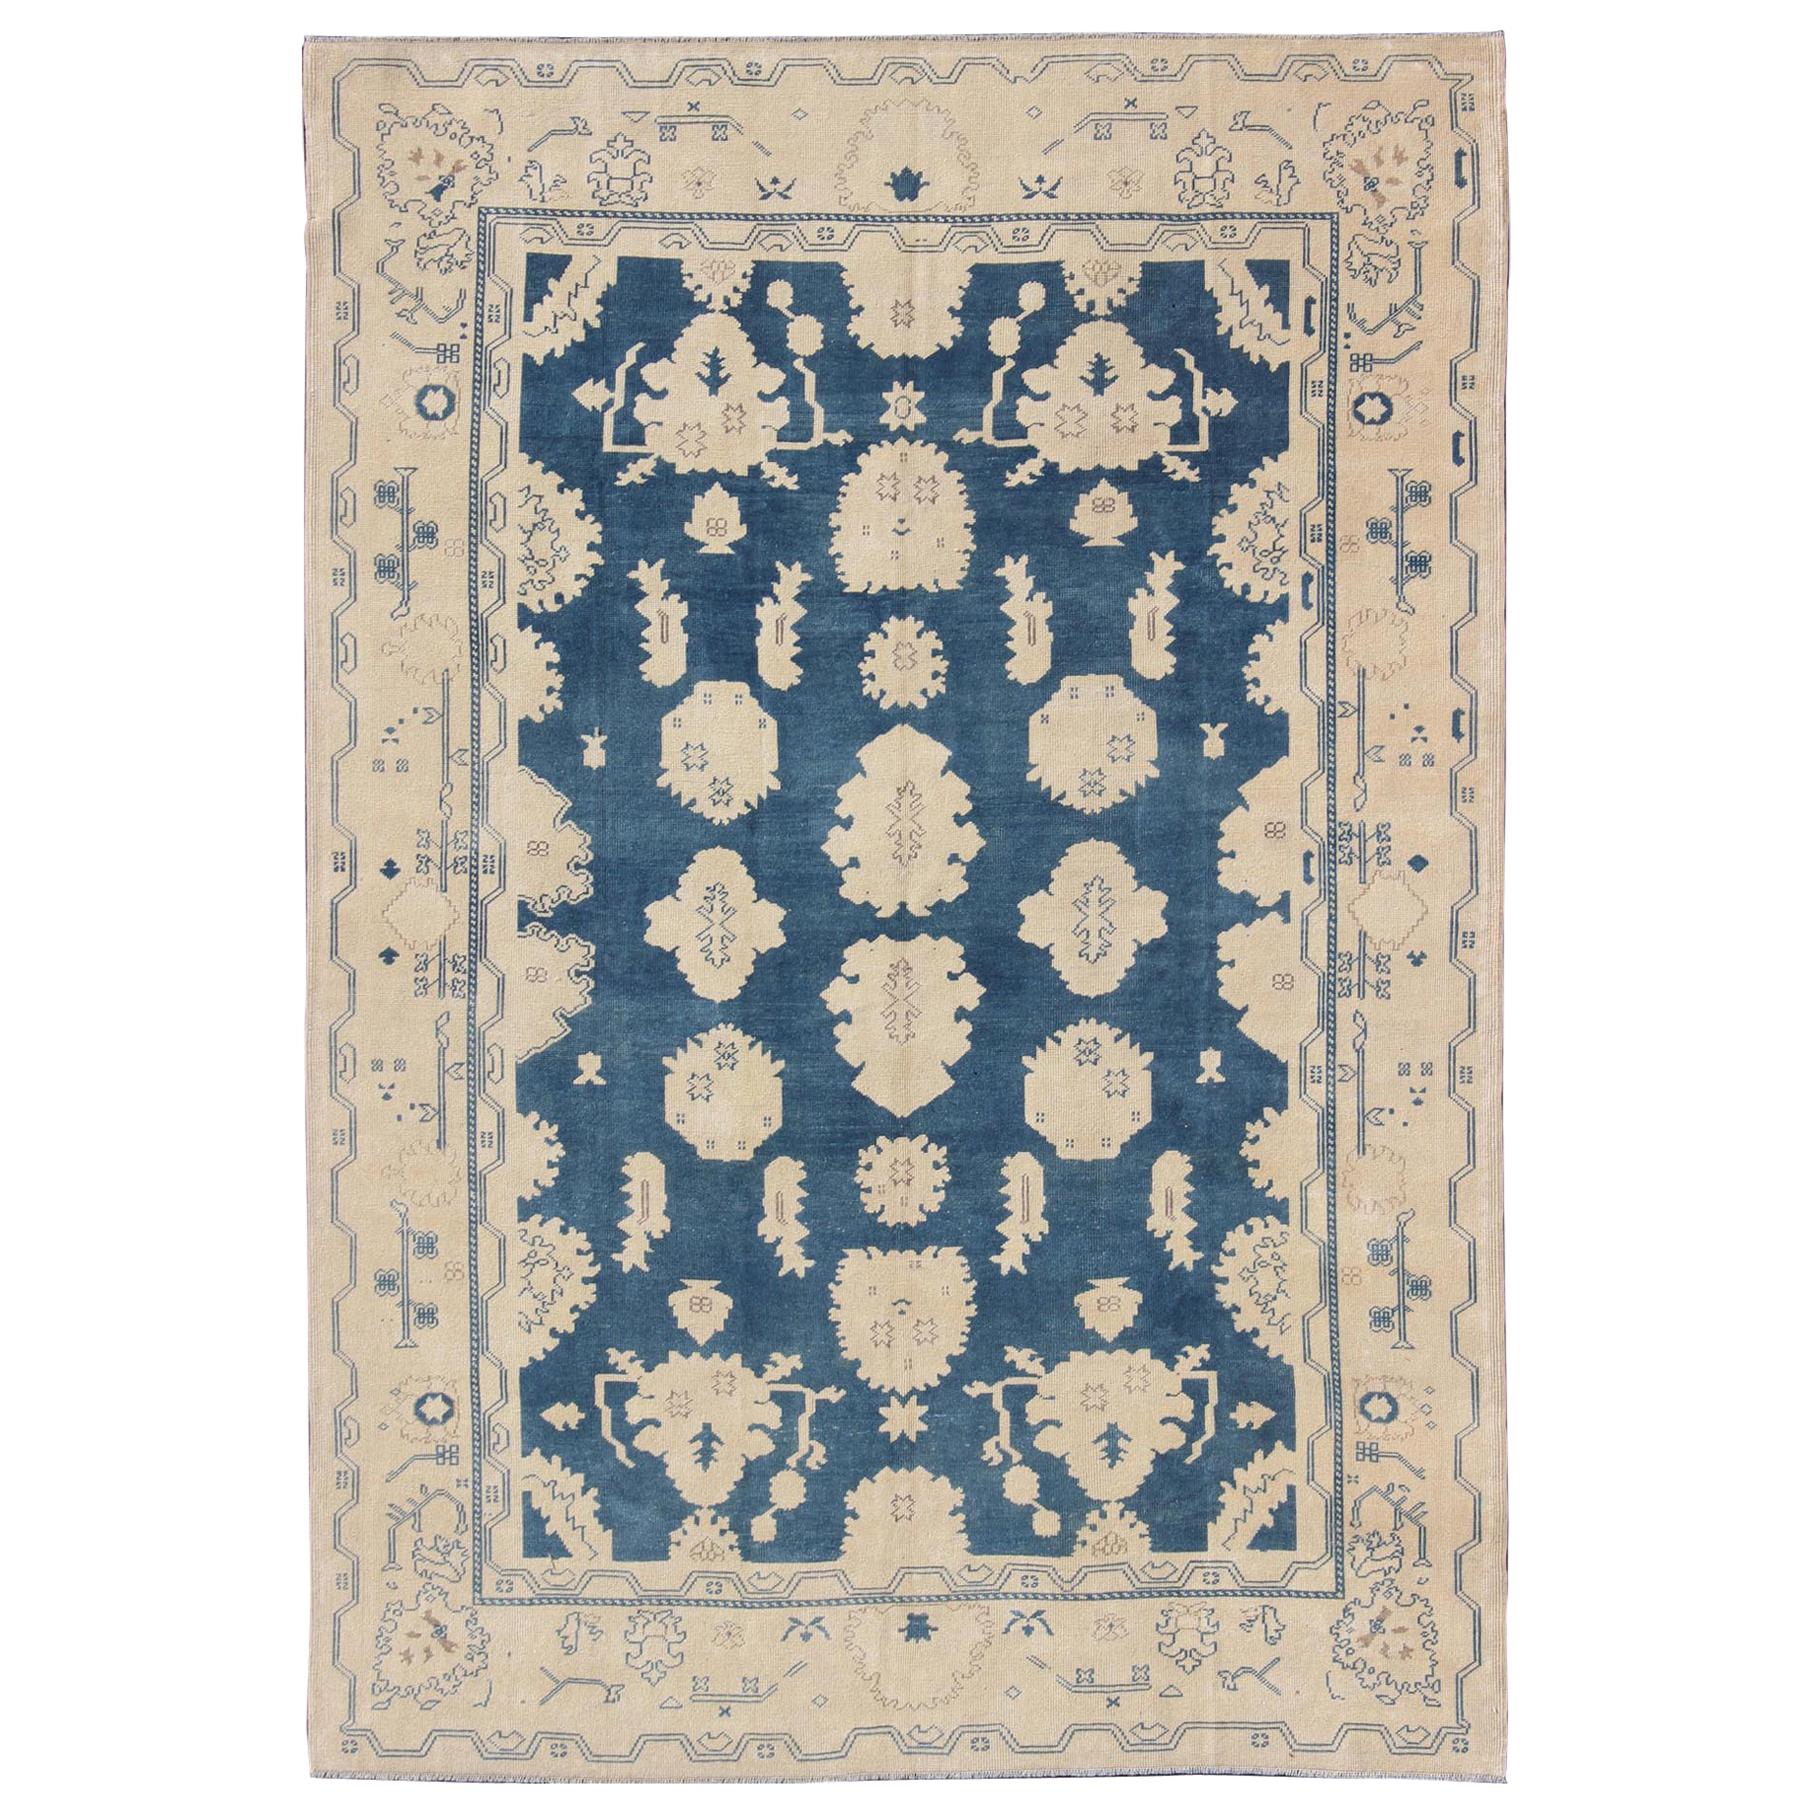 Türkischer Oushak-Teppich im Vintage-Stil mit All-Over-Design in Königsblau und Elfenbein